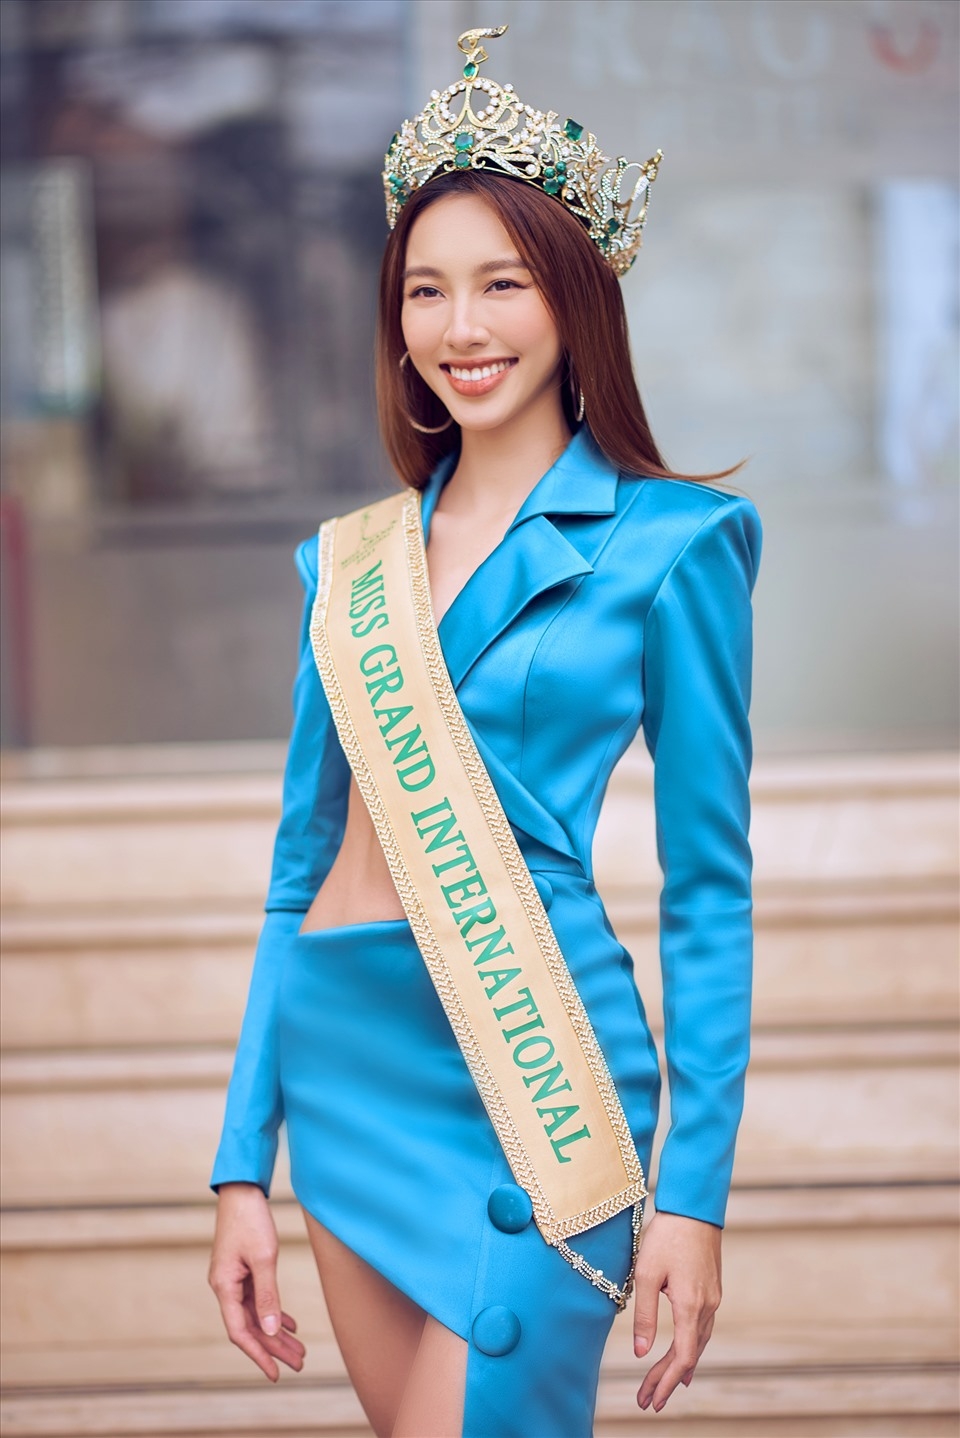 Hoa hậu Thùy Tiên lần đầu lên tiếng về ồn ào xé giấy nợ